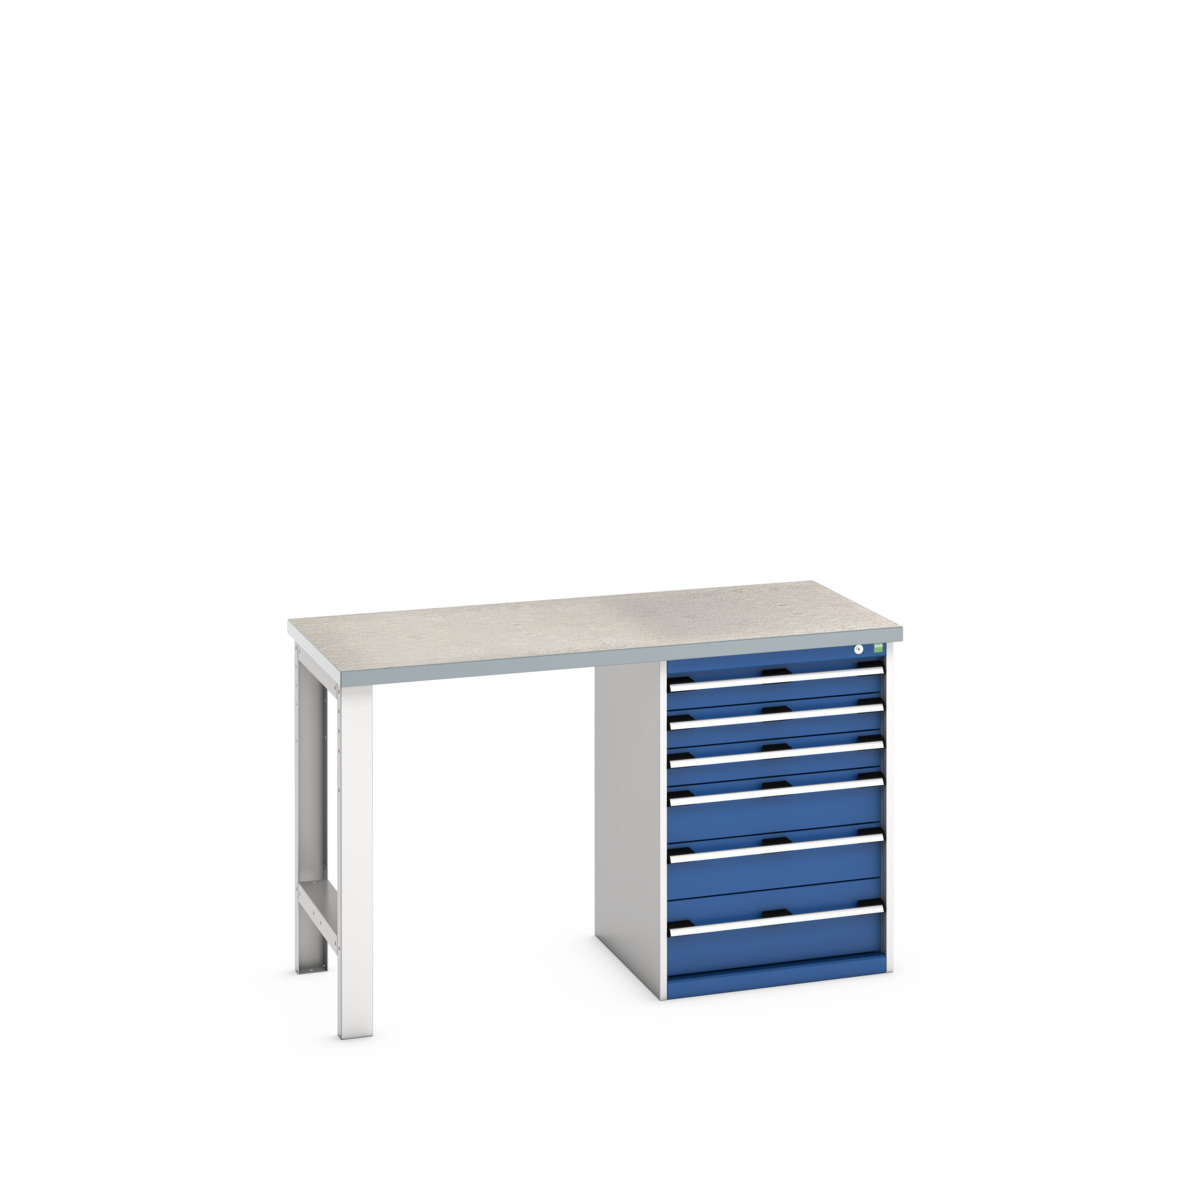 41003493.11V - cubio pedestal bench (lino)